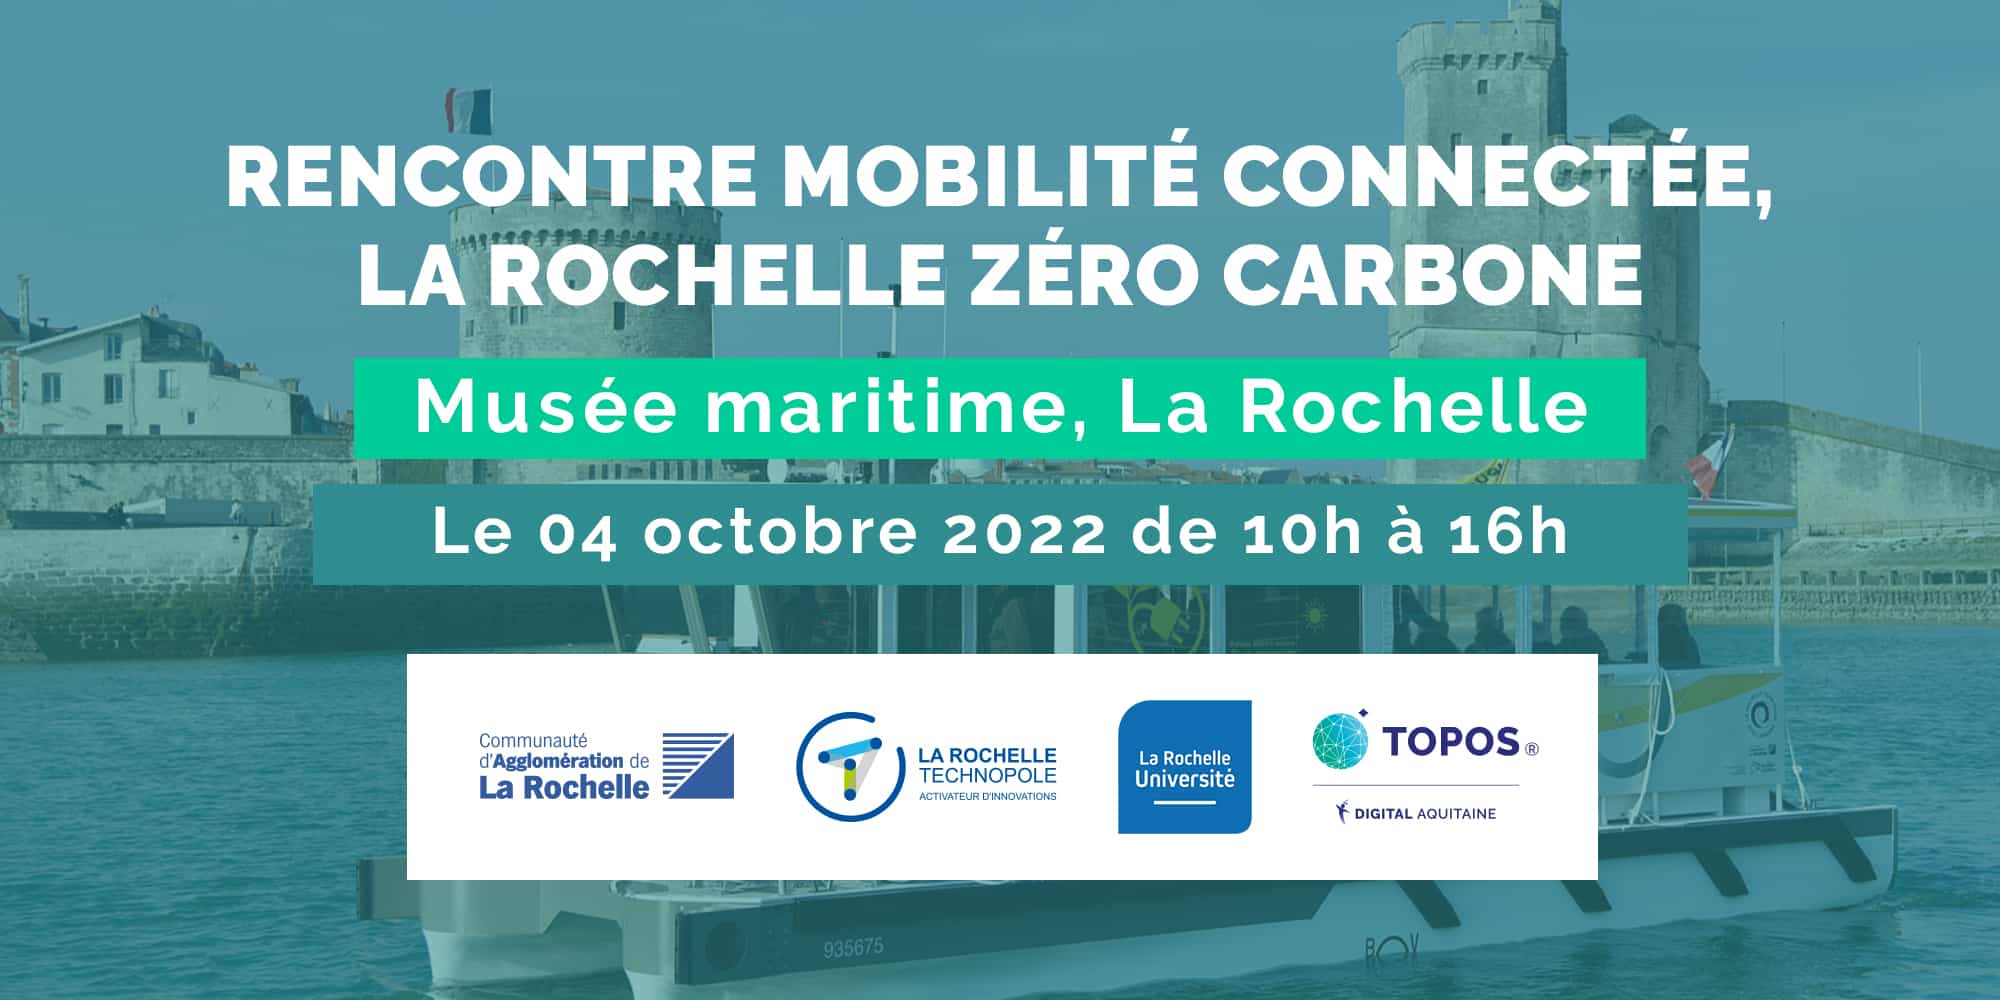 Rencontre mobilité connectée, La Rochelle Zéro Carbone